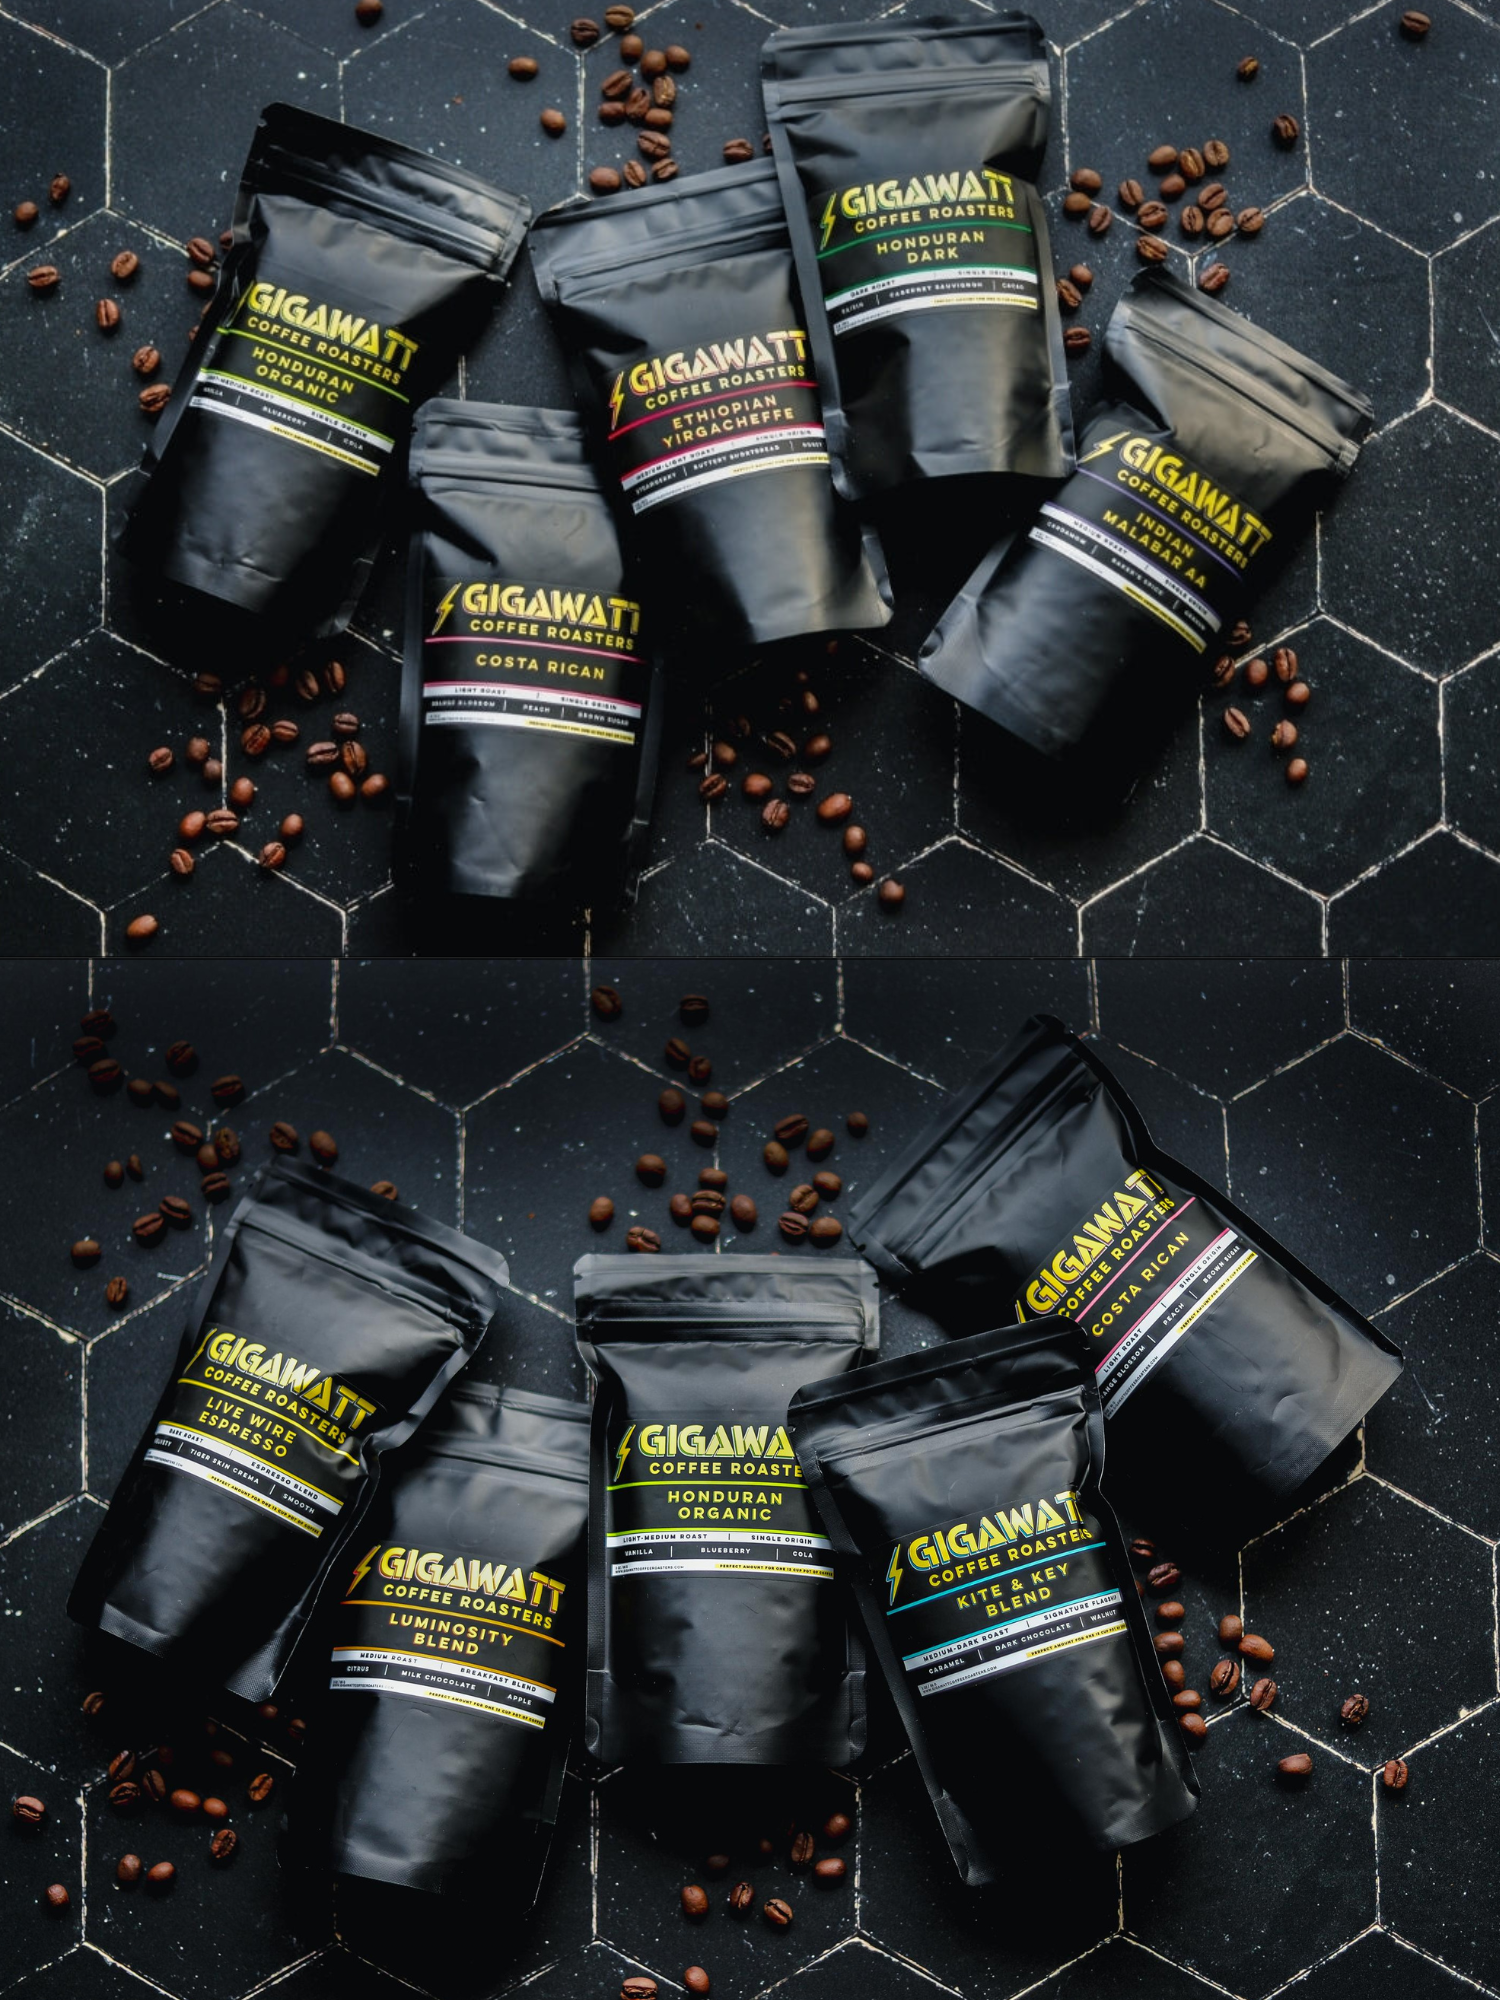 Ten Black Bags of Gigawatt Coffee Packs